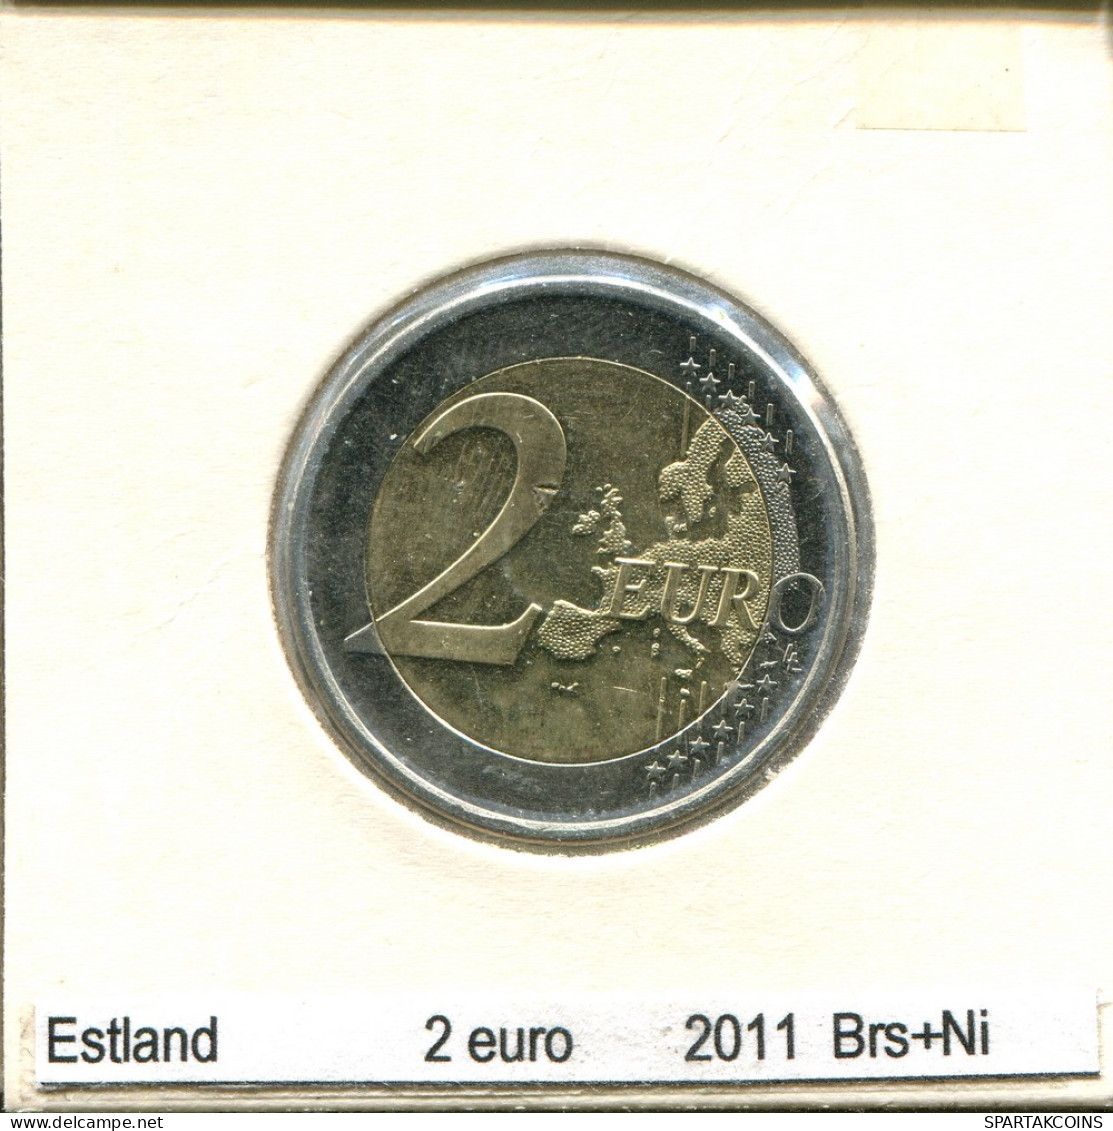 2 EURO 2011 ESTONIE ESTONIA BIMETALLIC Pièce #AS685.F - Estonia